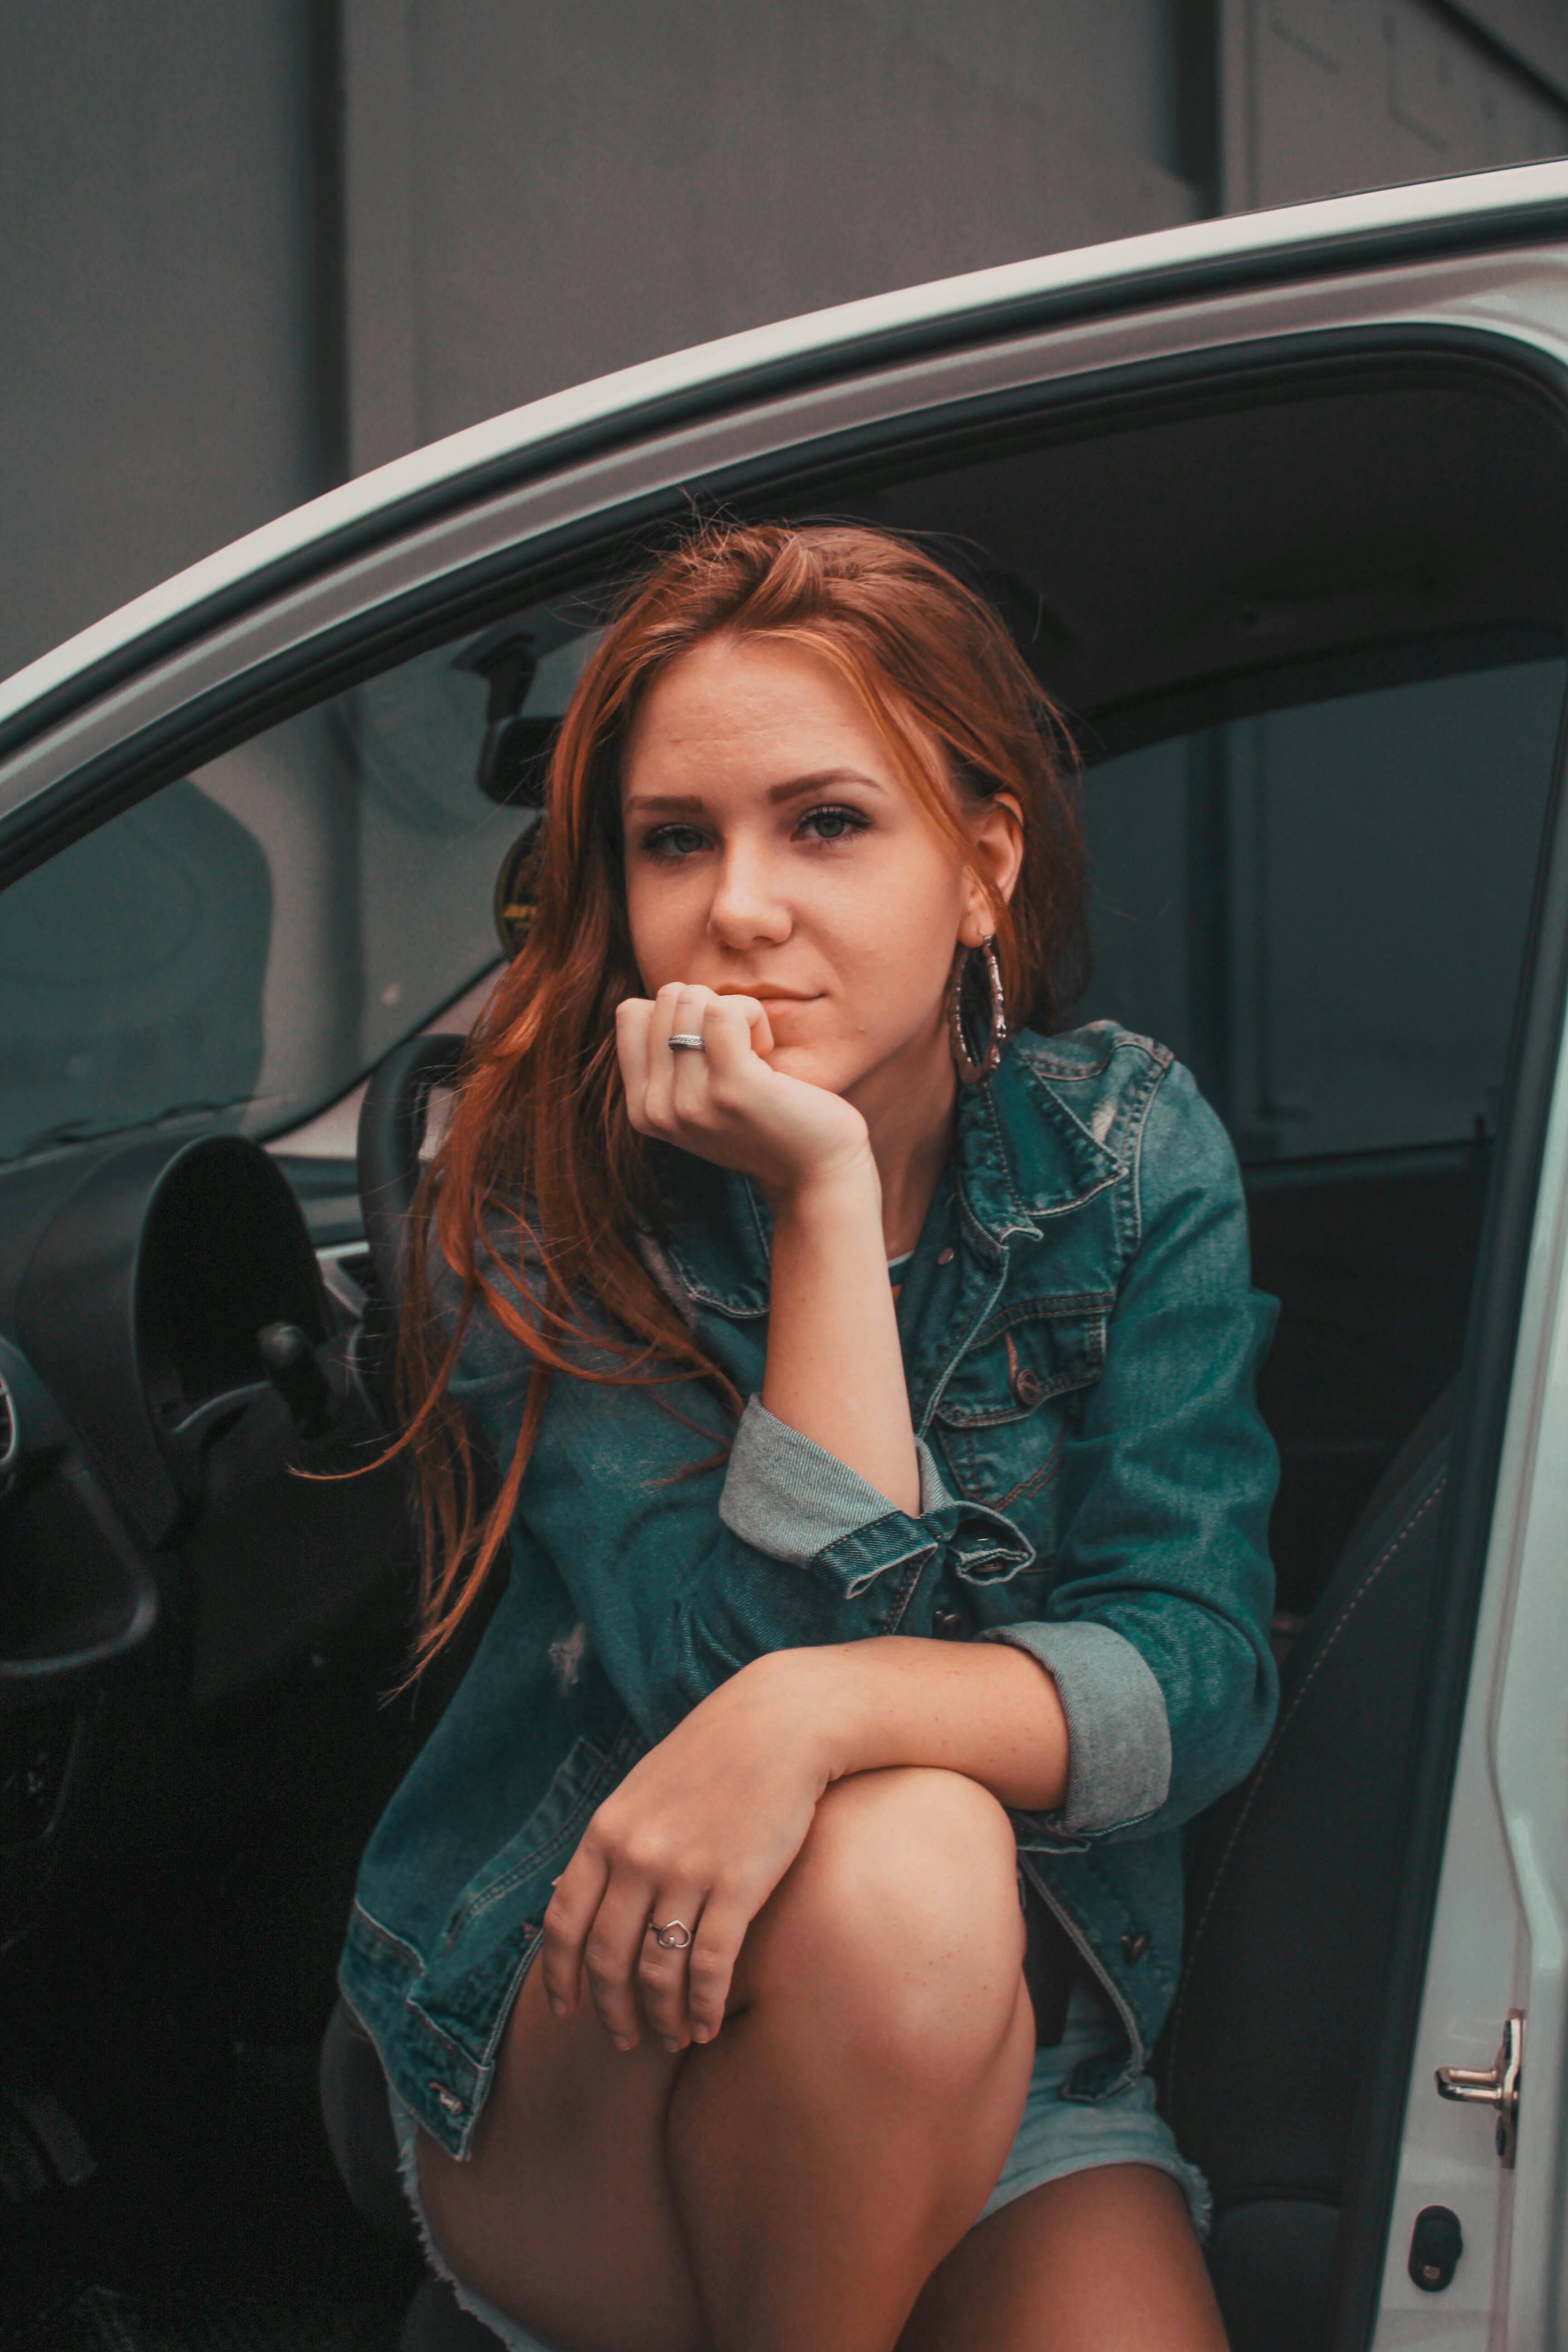 Eine Frau, die mit offener Autotür sitzt und über etwas nachdenkt | Quelle: Pexels